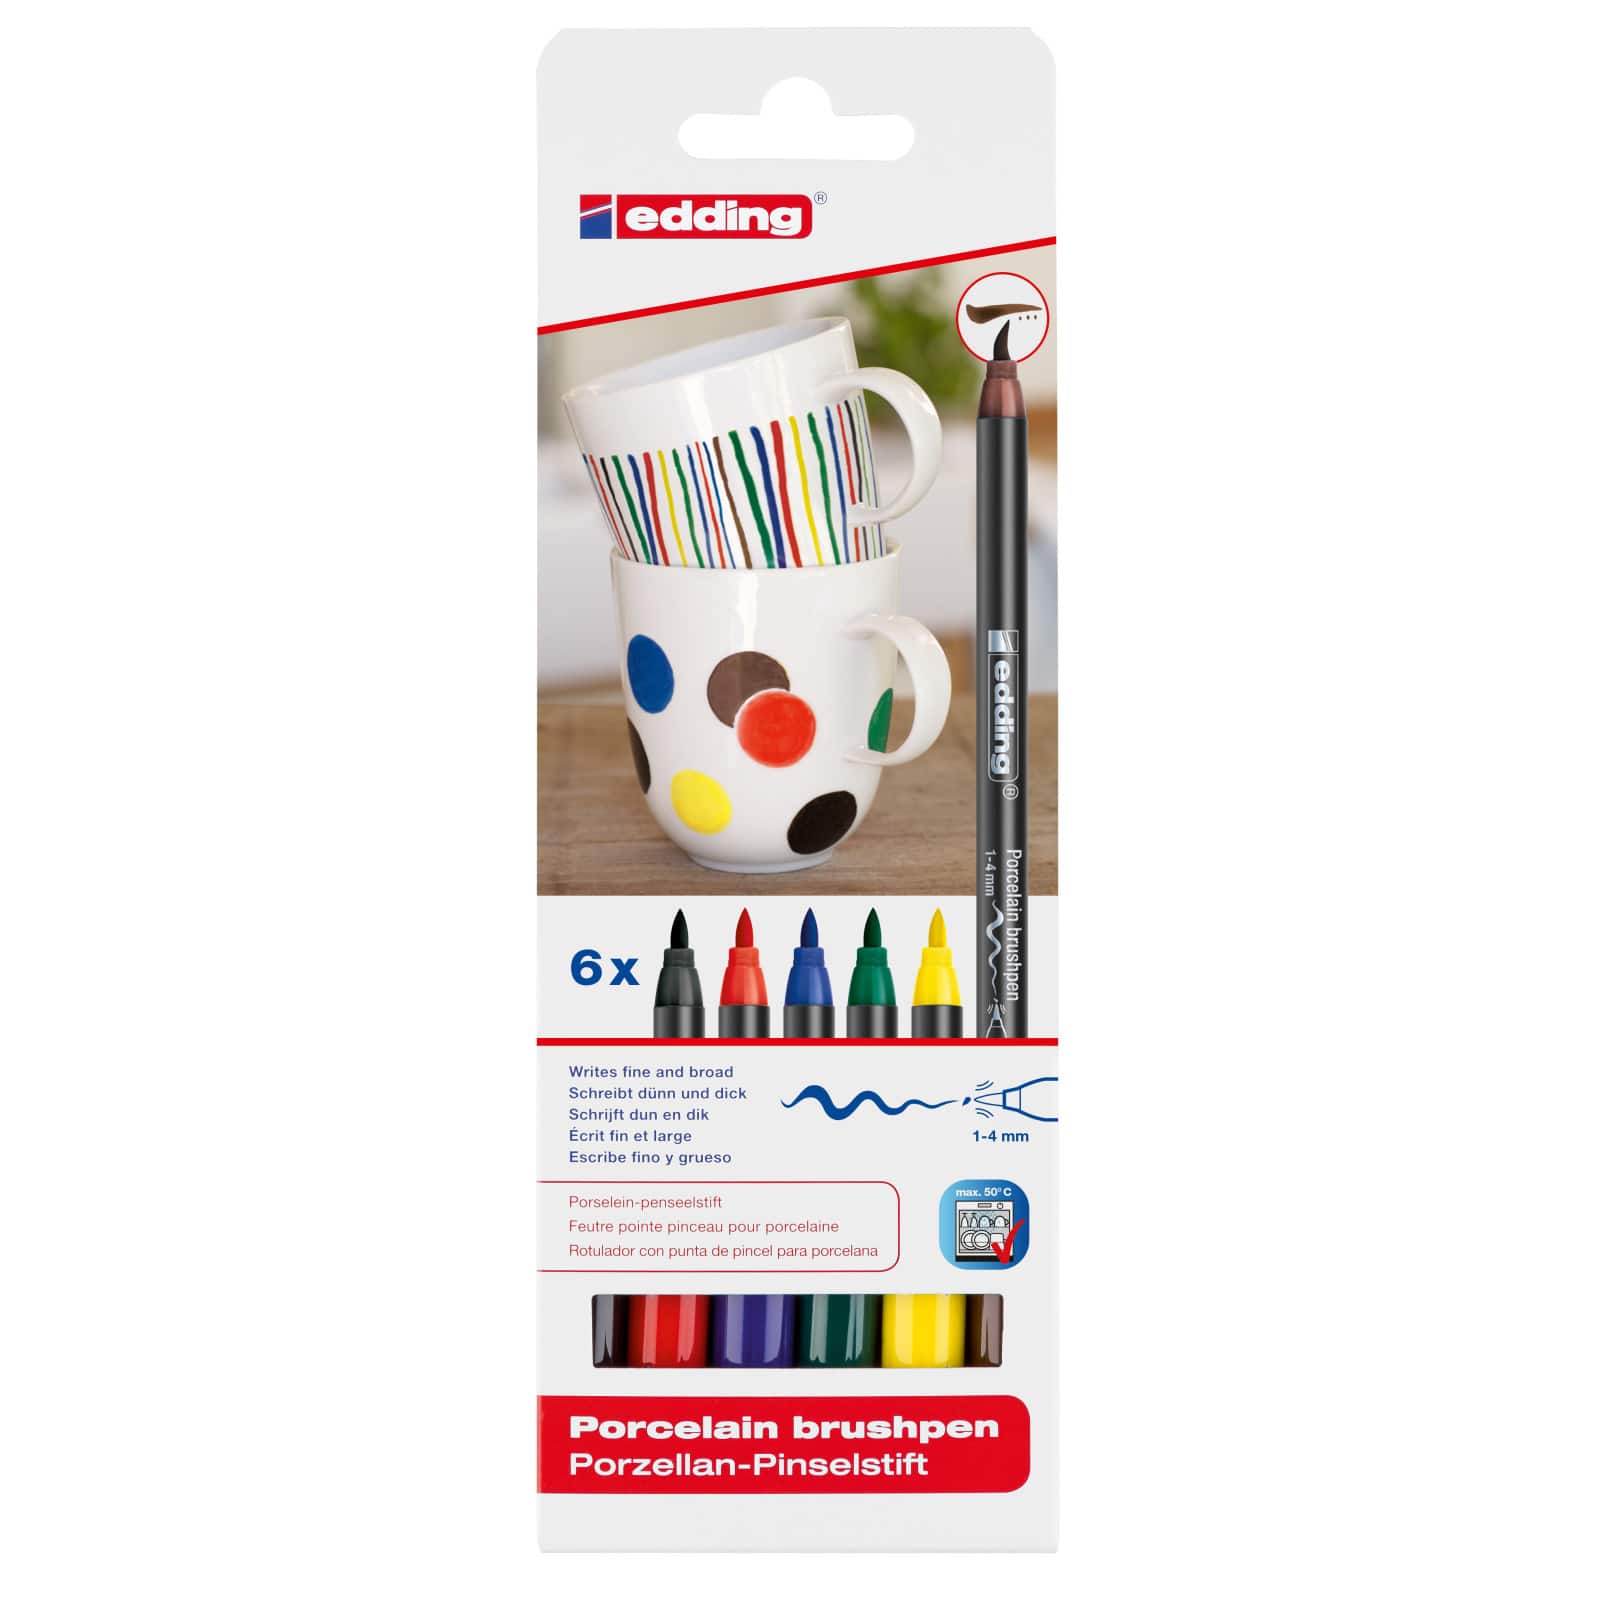 Three Colour Sets Edding 4200 Porcelain Brush Pen Oven Bake Marker Pen Set 